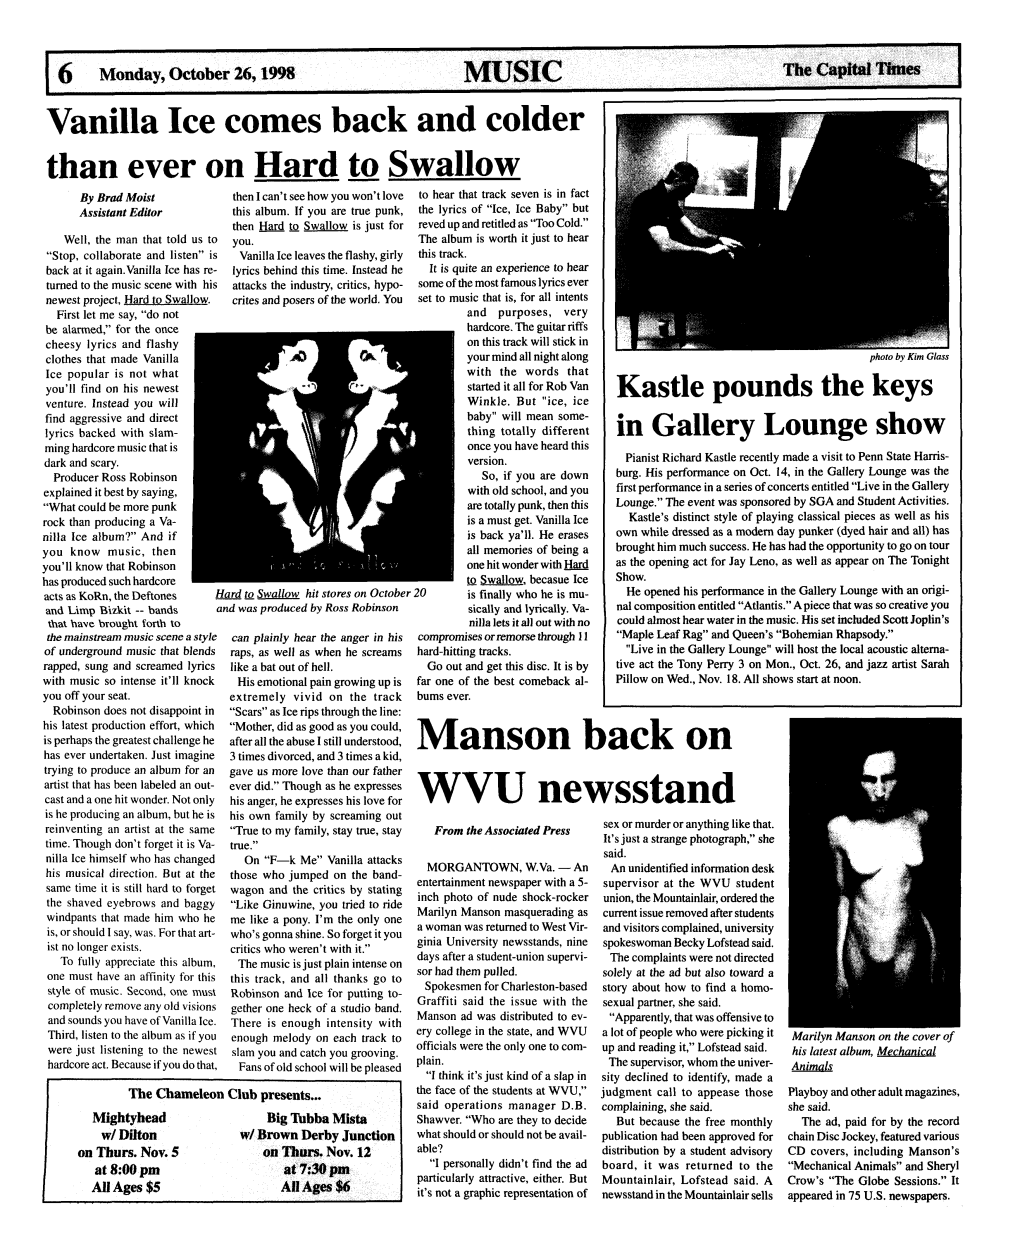 Manson Back WVU Newsstand